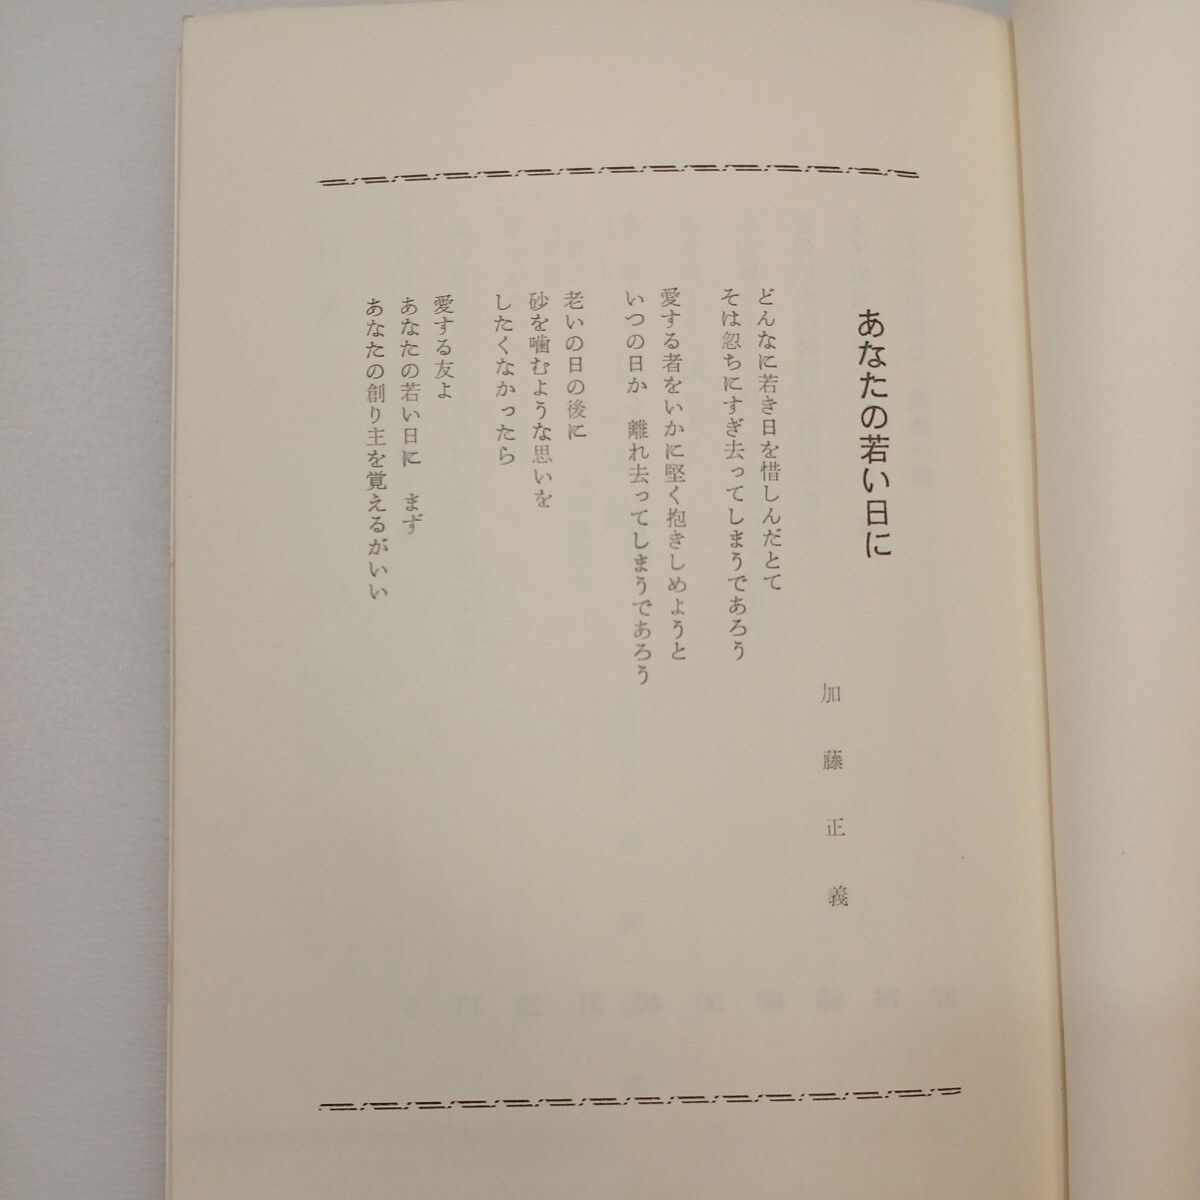 zaa-572♪生きるとは (よろこびの泉シリーズ 第4集) 単行本 林 トヨ (編集) 日本ミッション (1978/12/1)